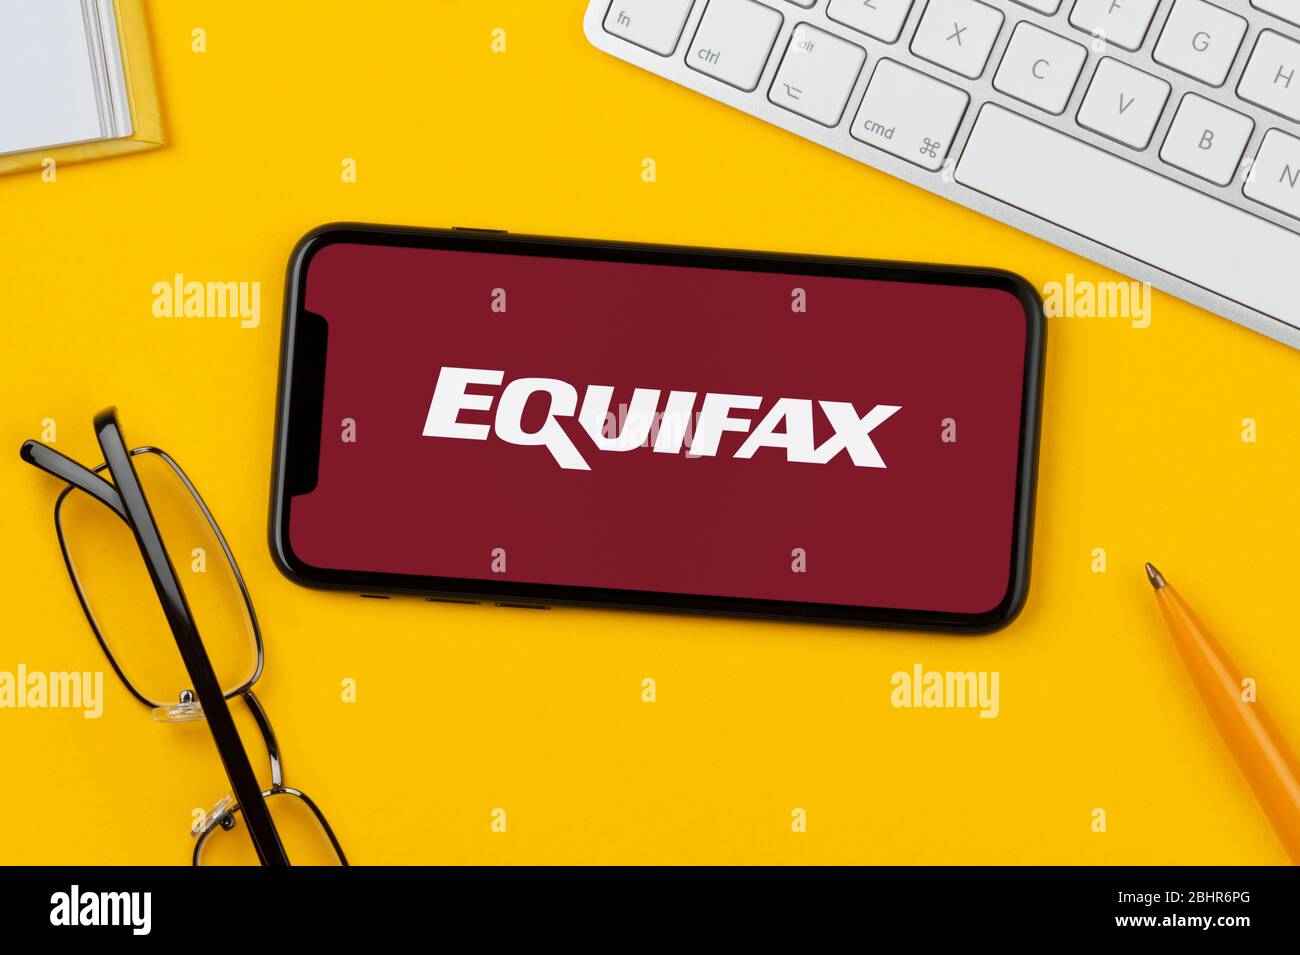 Un smartphone que muestra el logotipo de Equifax descansa sobre un fondo amarillo junto con un teclado, gafas, lápiz y libro (sólo para uso editorial). Foto de stock